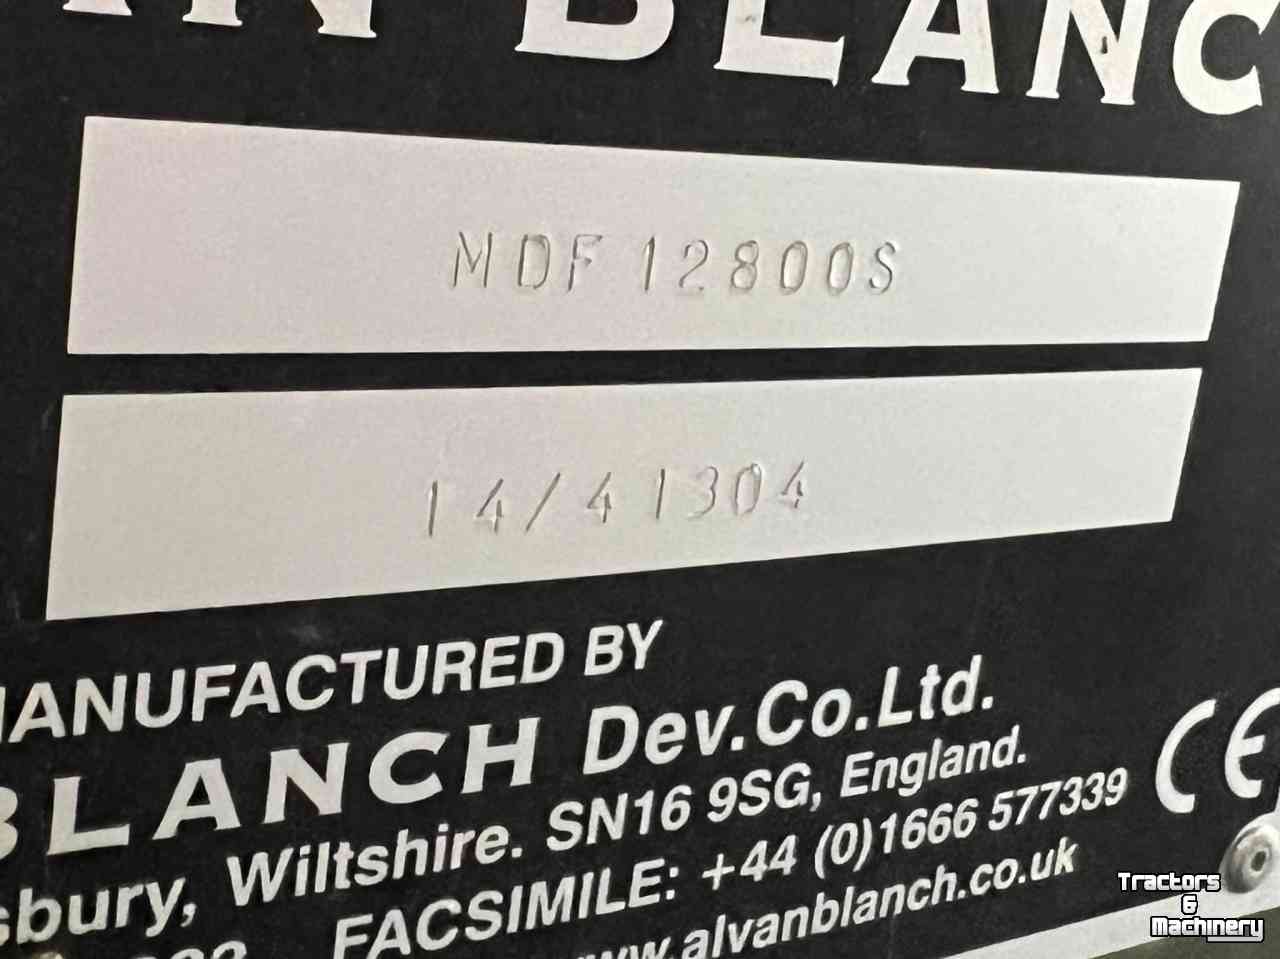 Overige  Alvan Blanch MDF 12800 S